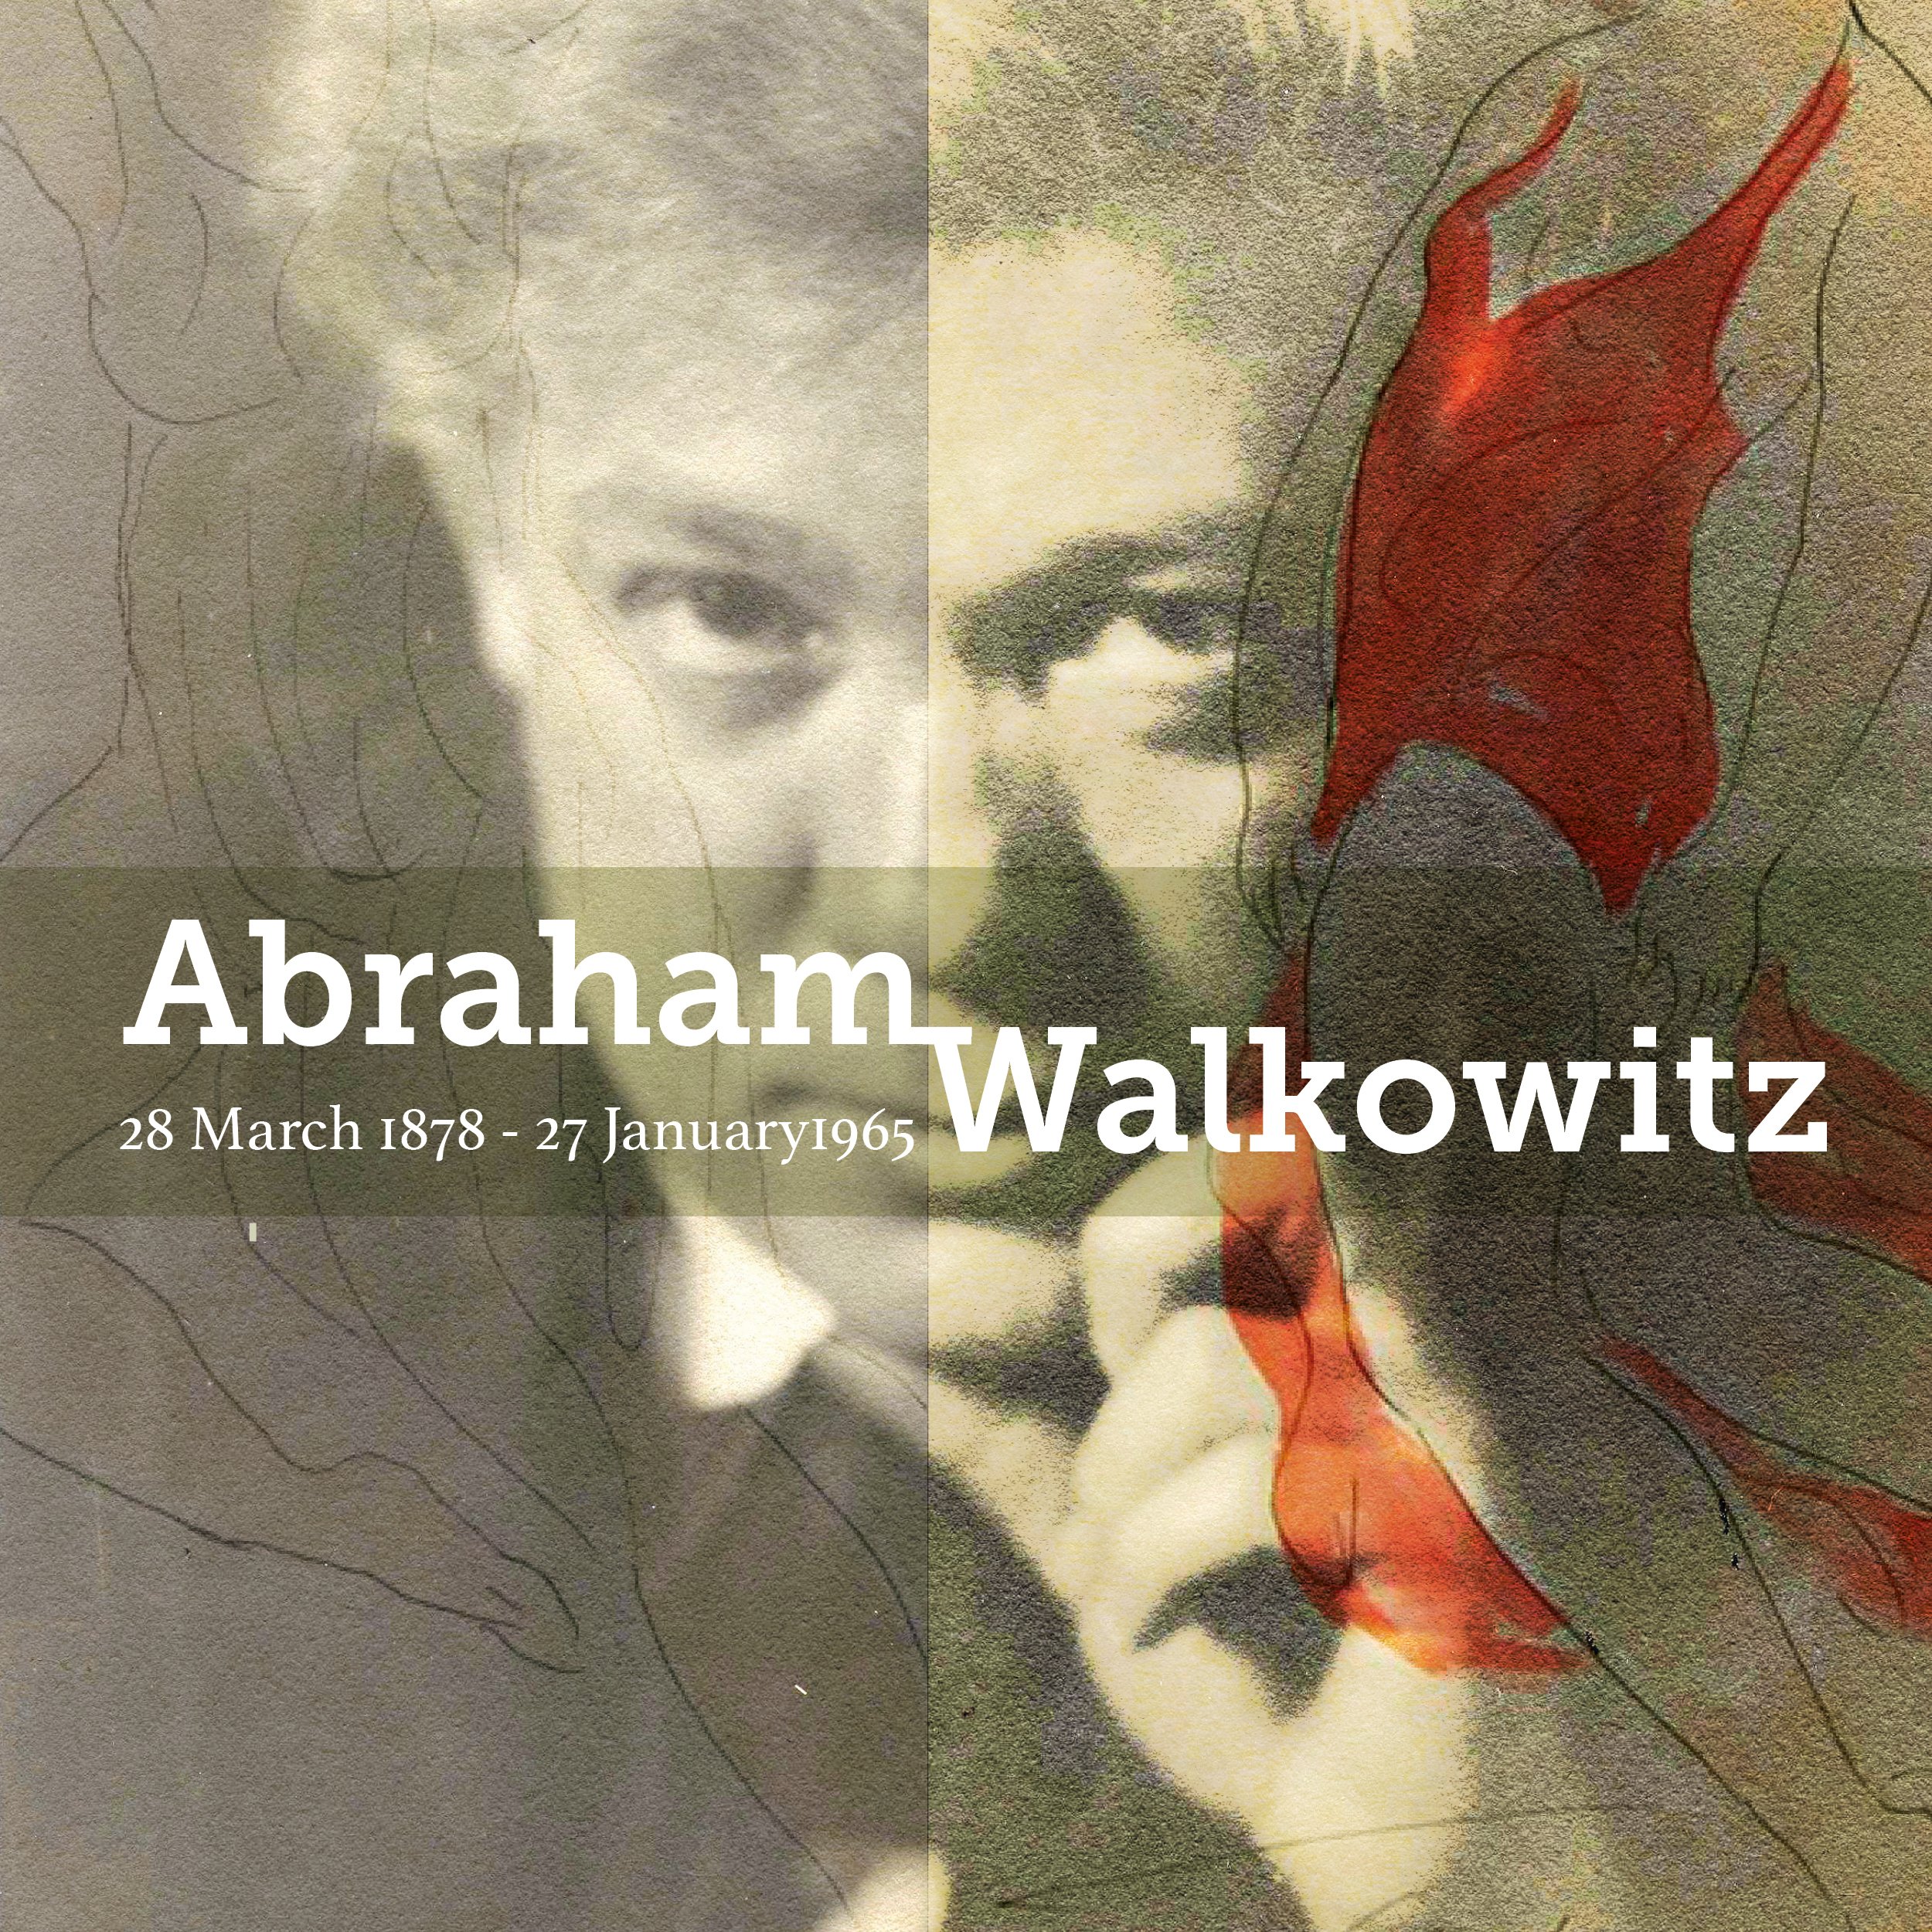 Abraham-Walkowitz E1.jpg